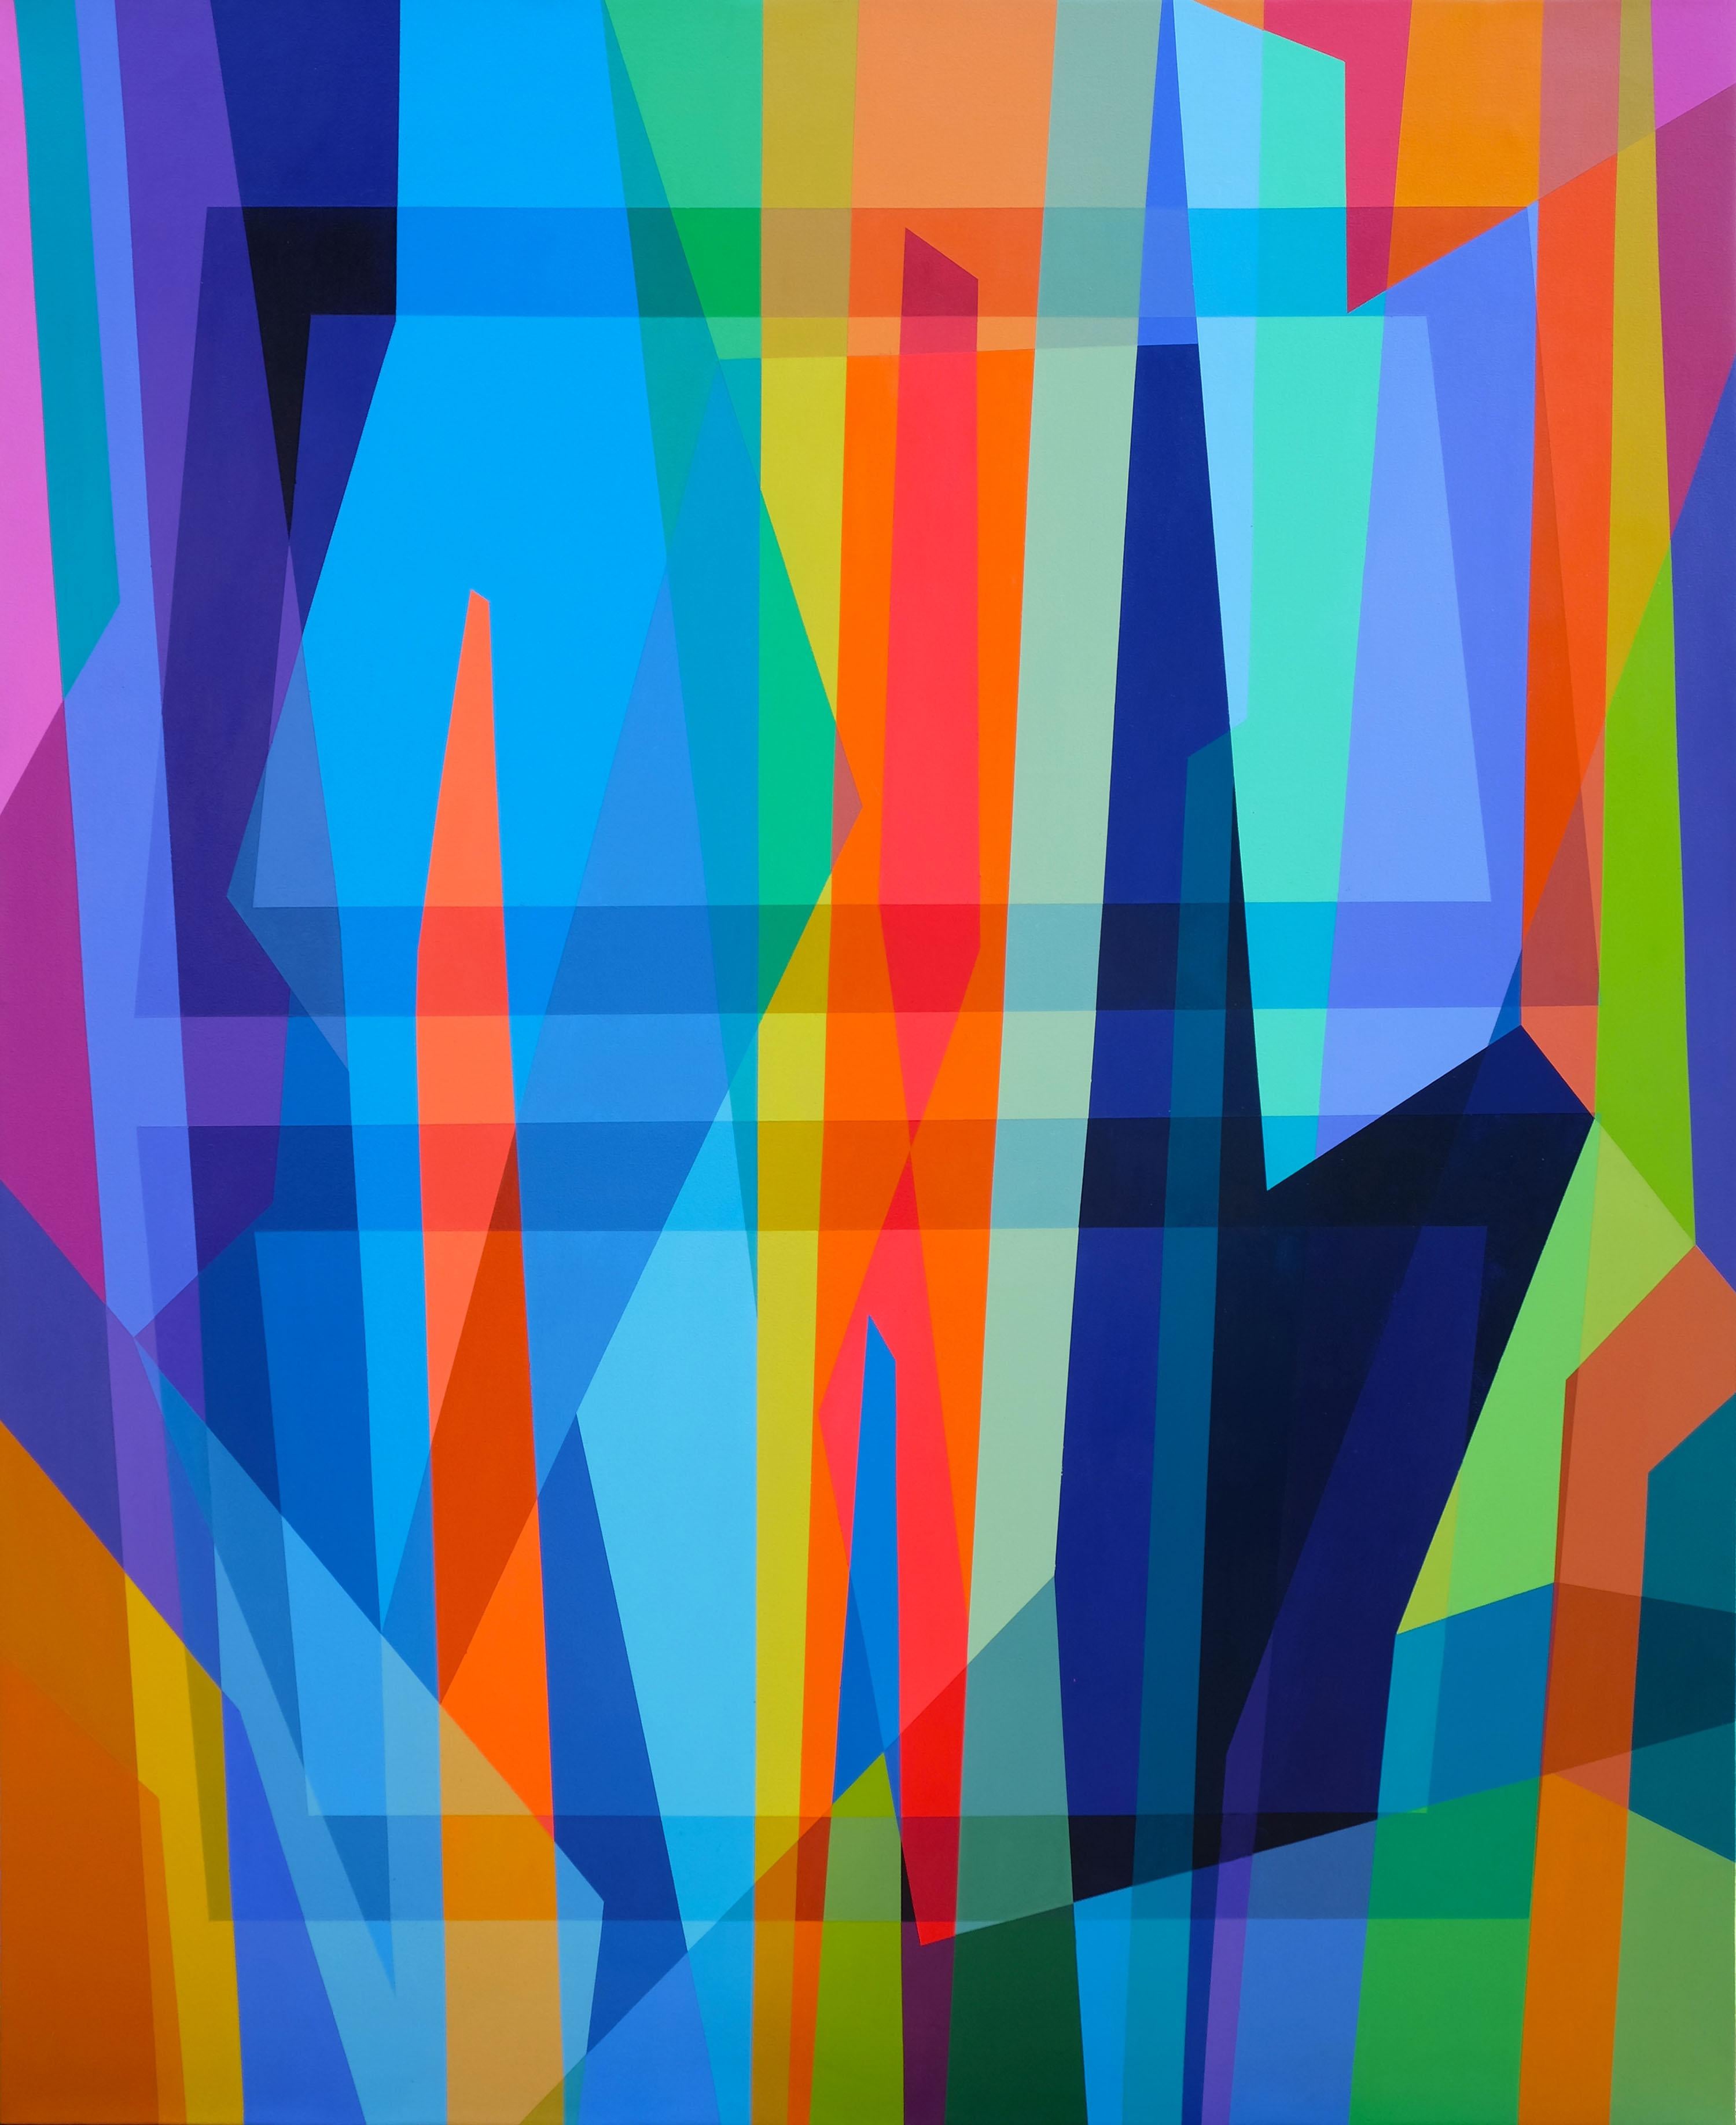 Abstract Painting Patrick Schmidt - A l'intérieur du labyrinthe